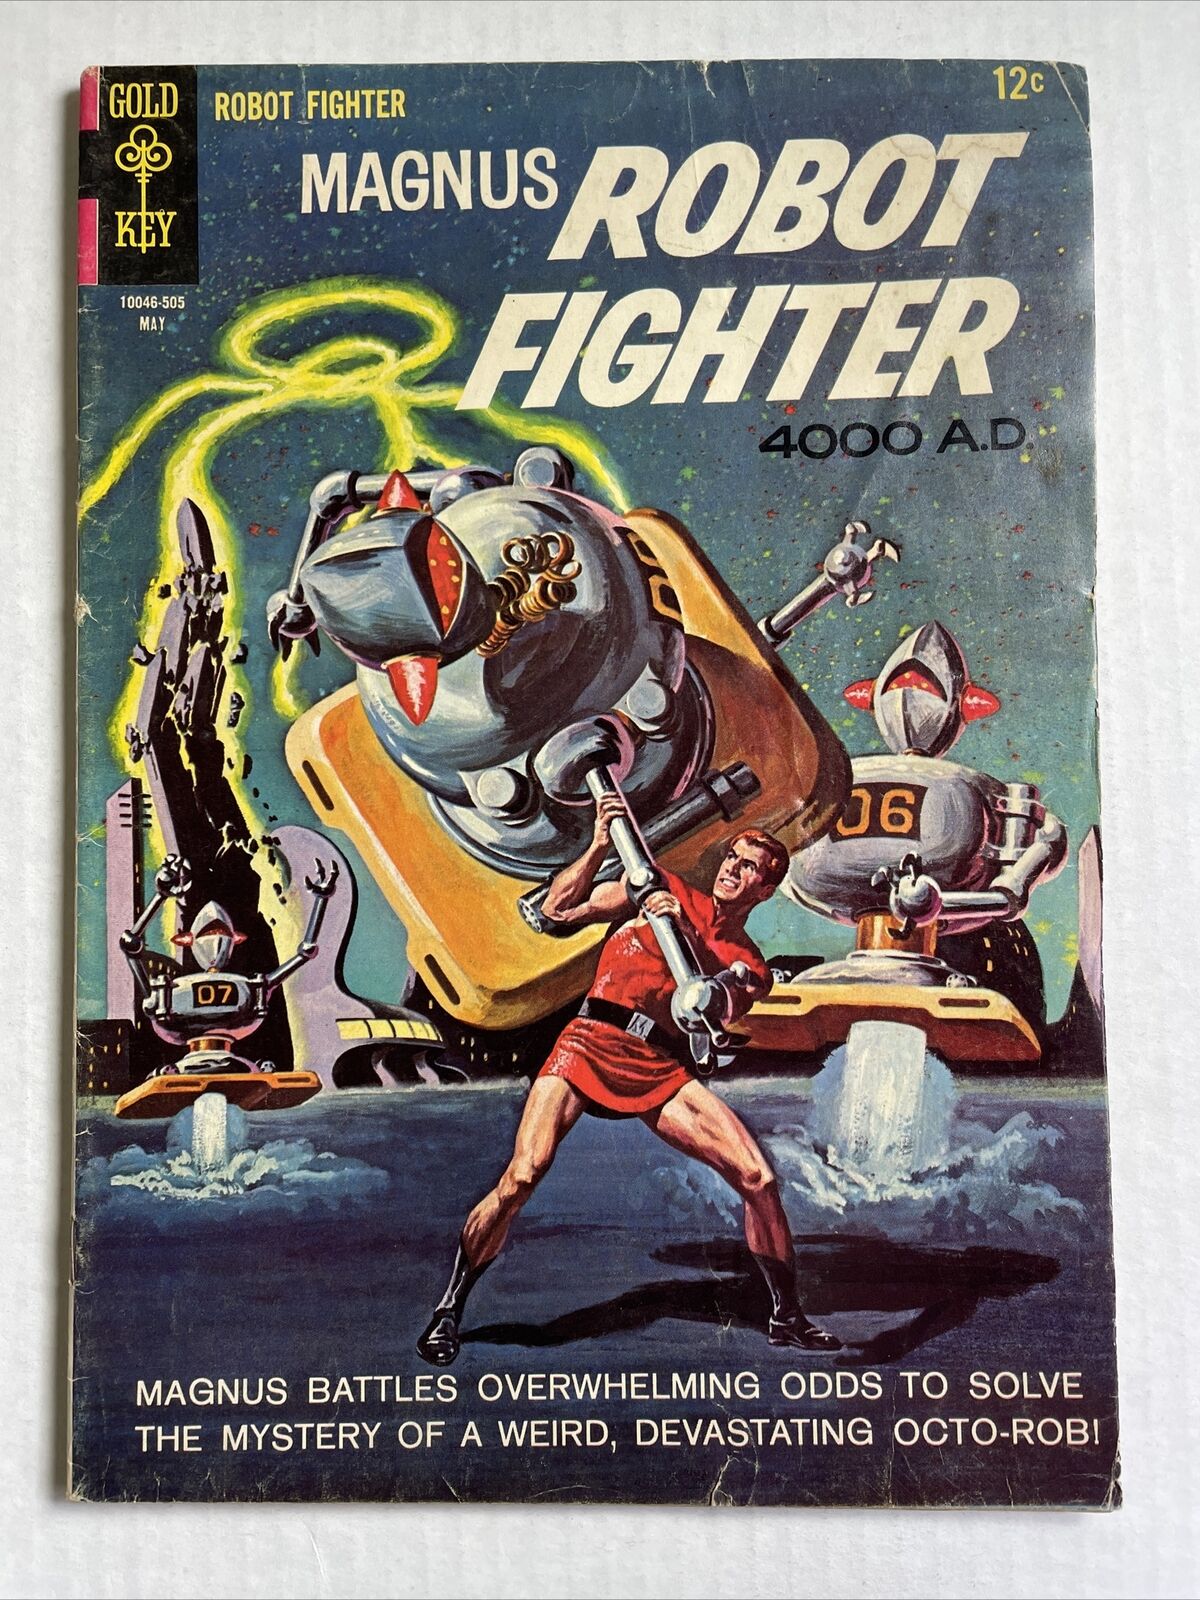 Magnus Robot Fighter #10 Gold Key 1965